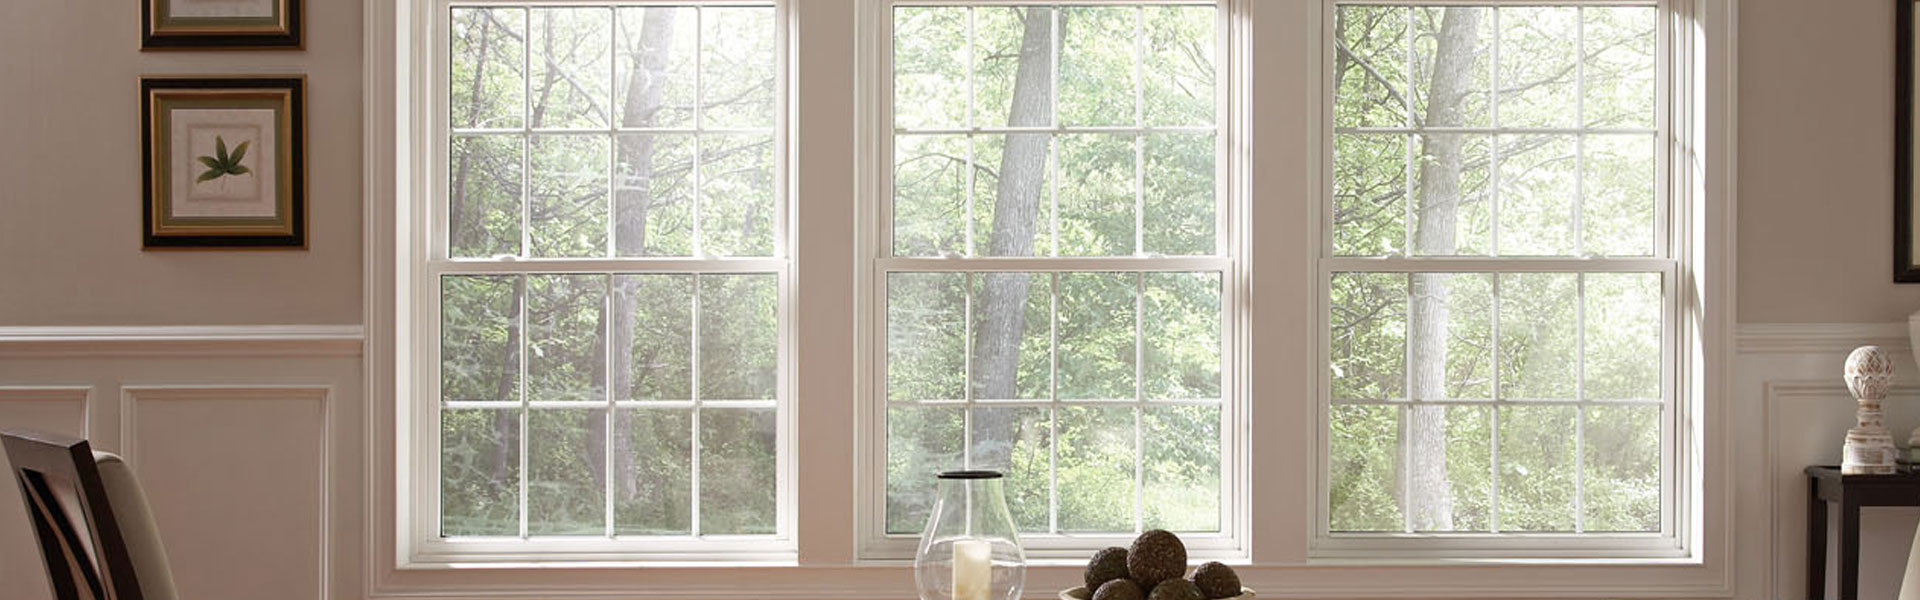 White-framed windows inside a living room